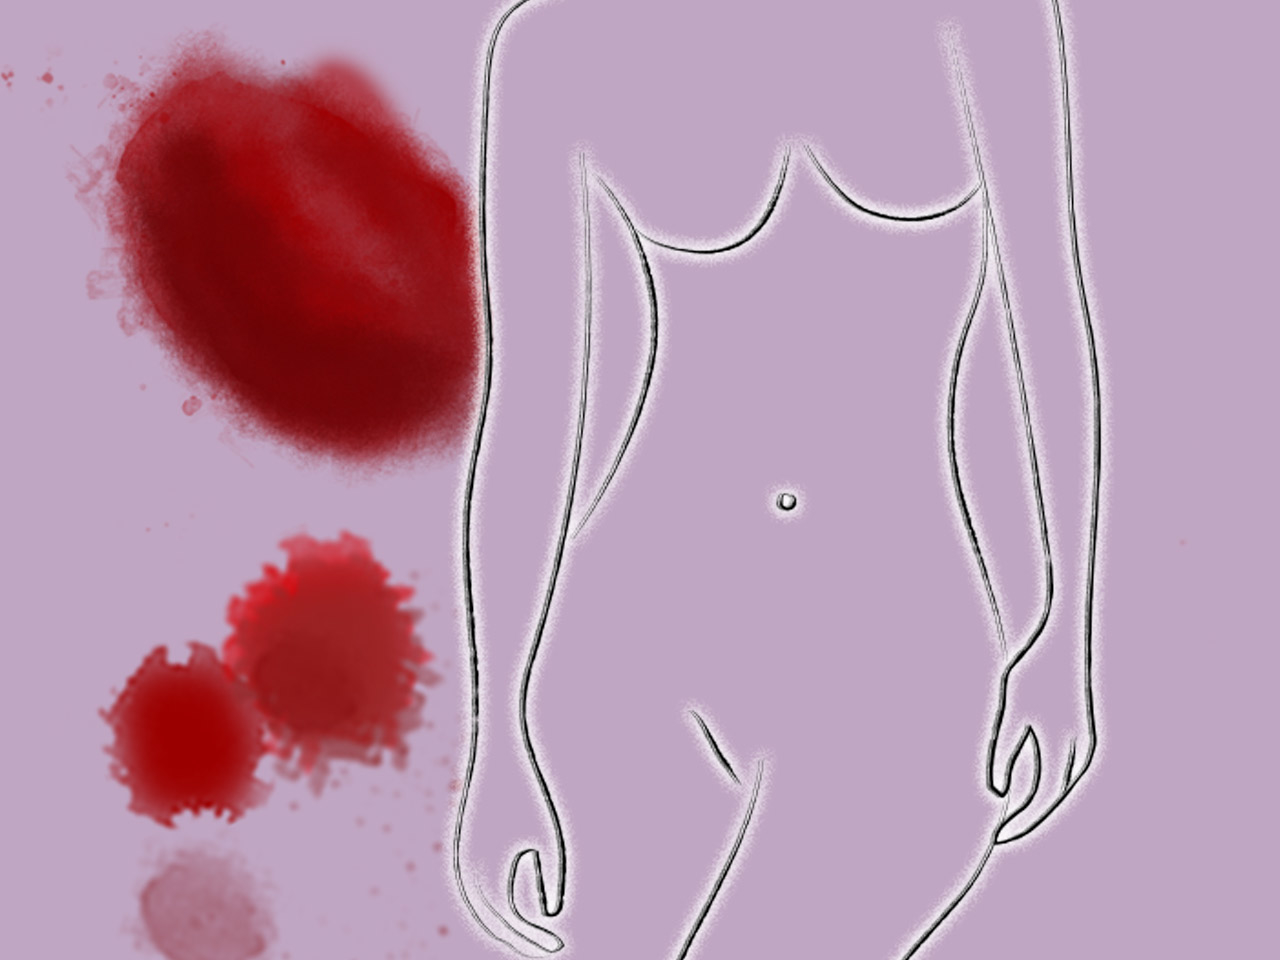 Unter Schmierblutung, auch Zwischenblutung oder Spotting genannt, leiden viele Frauen.